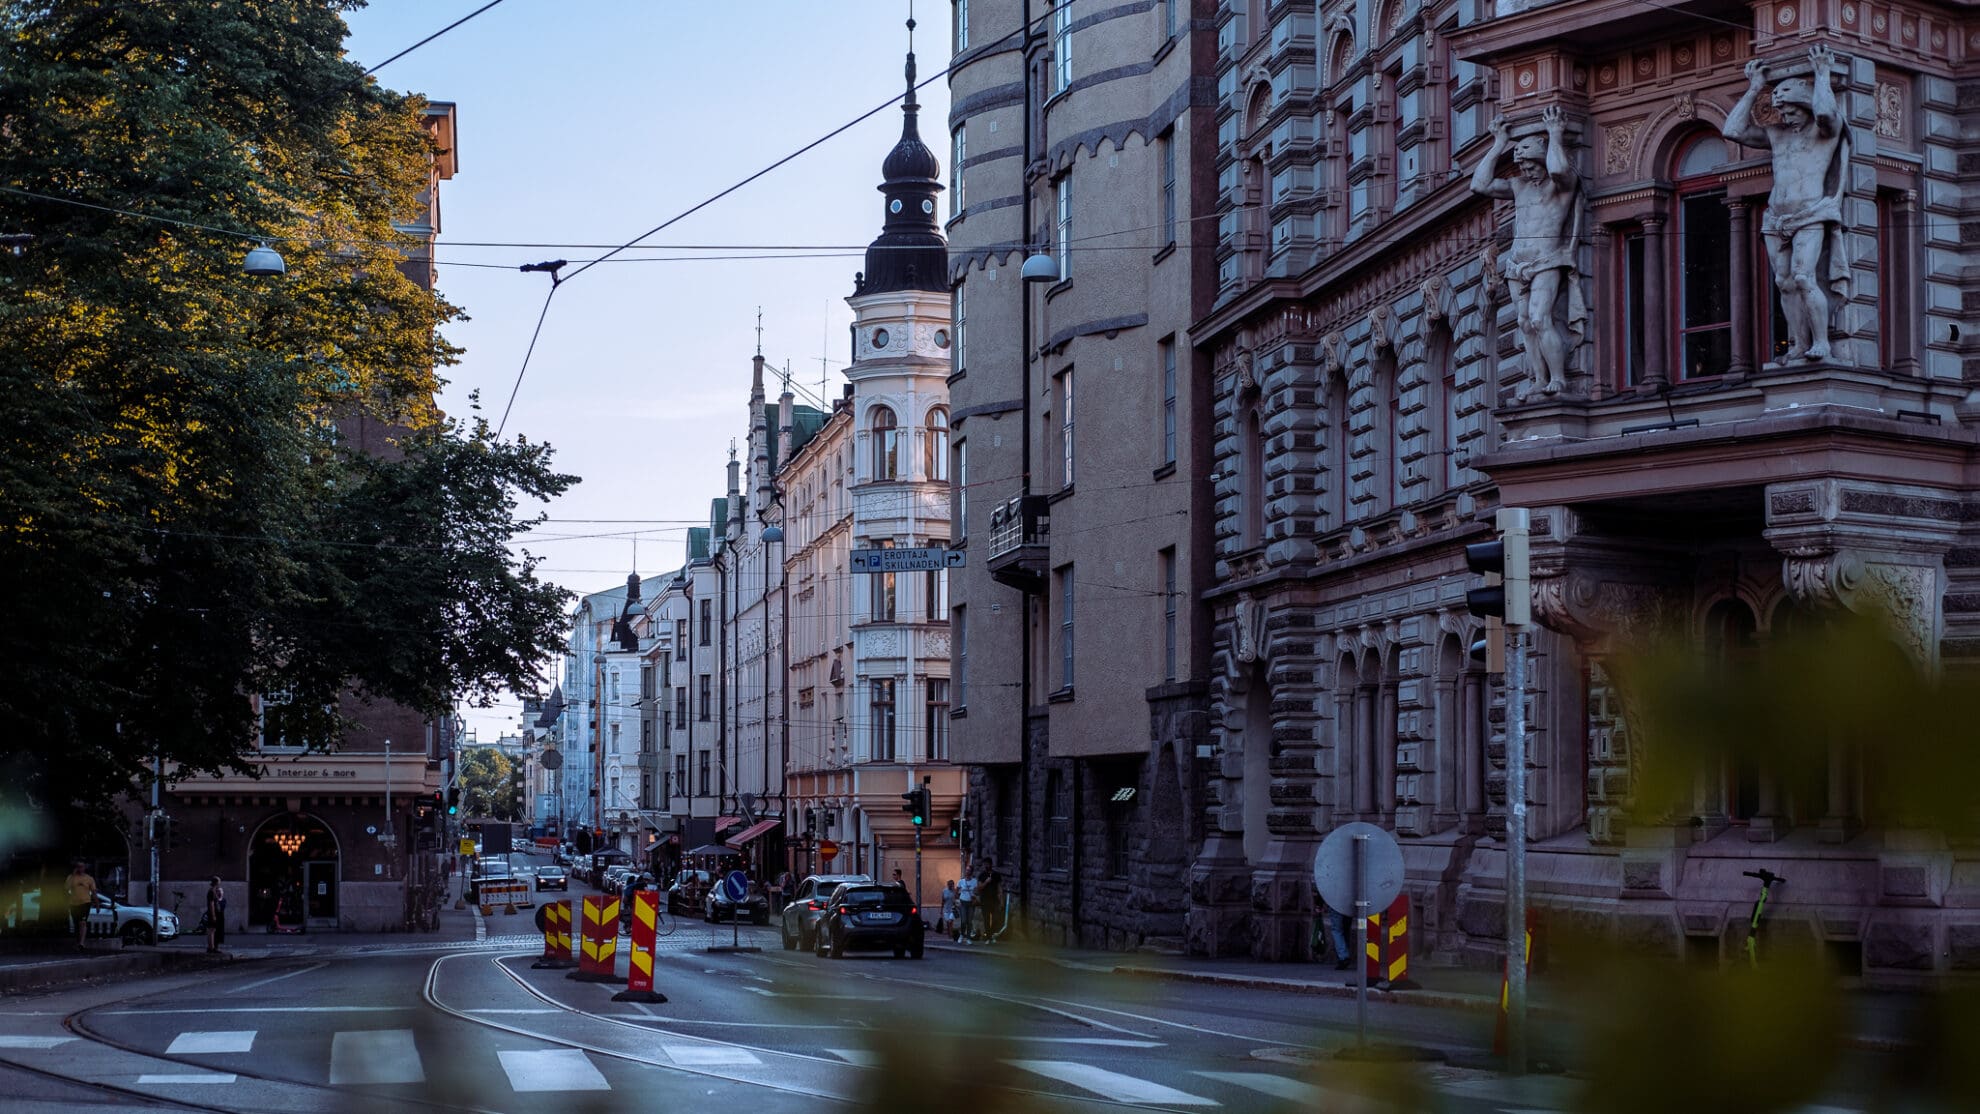 Blick über eine Straßenkreuzung in eine lange Straße, gesäumt von alten Gebäude mit verzierten Giebeln in der Abendsonne.